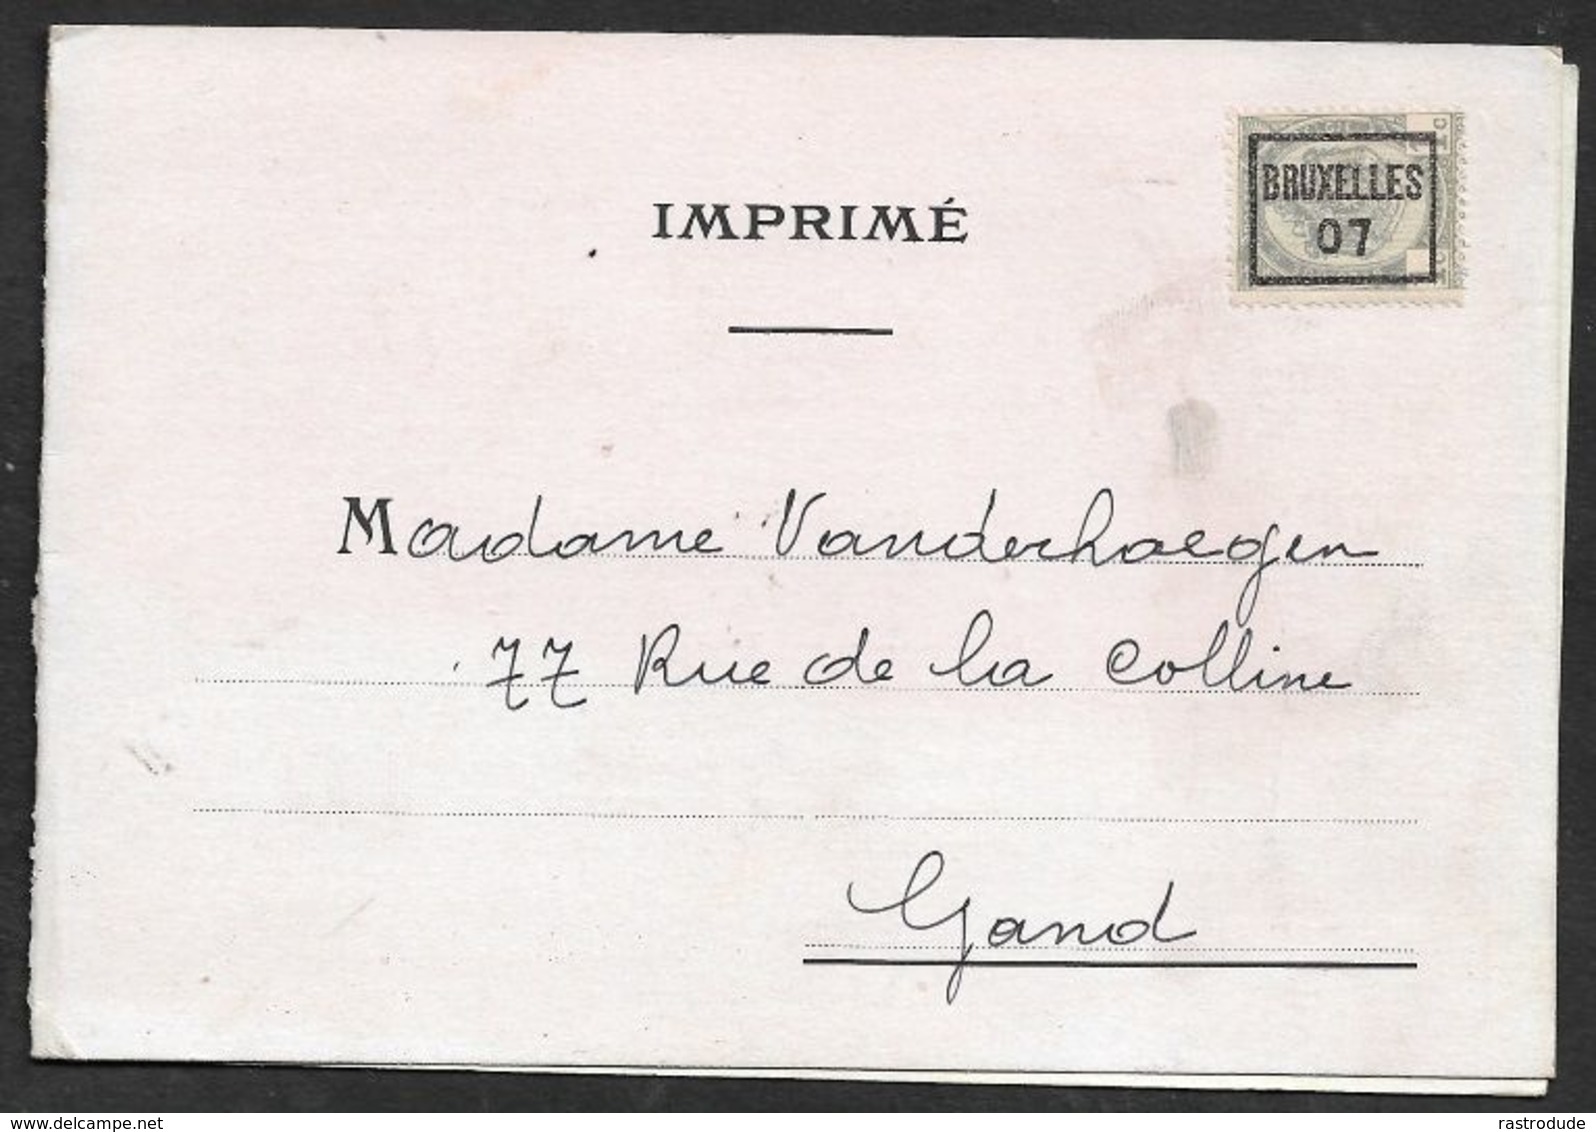 1907 BELGIQUE - IMPRIMÉ PRÉOBLITÉRÉ 1c BRUXELLES  A GAND  - FOURRURES EN GROS, PHILIPP NORDEN - Rolstempels 1900-09